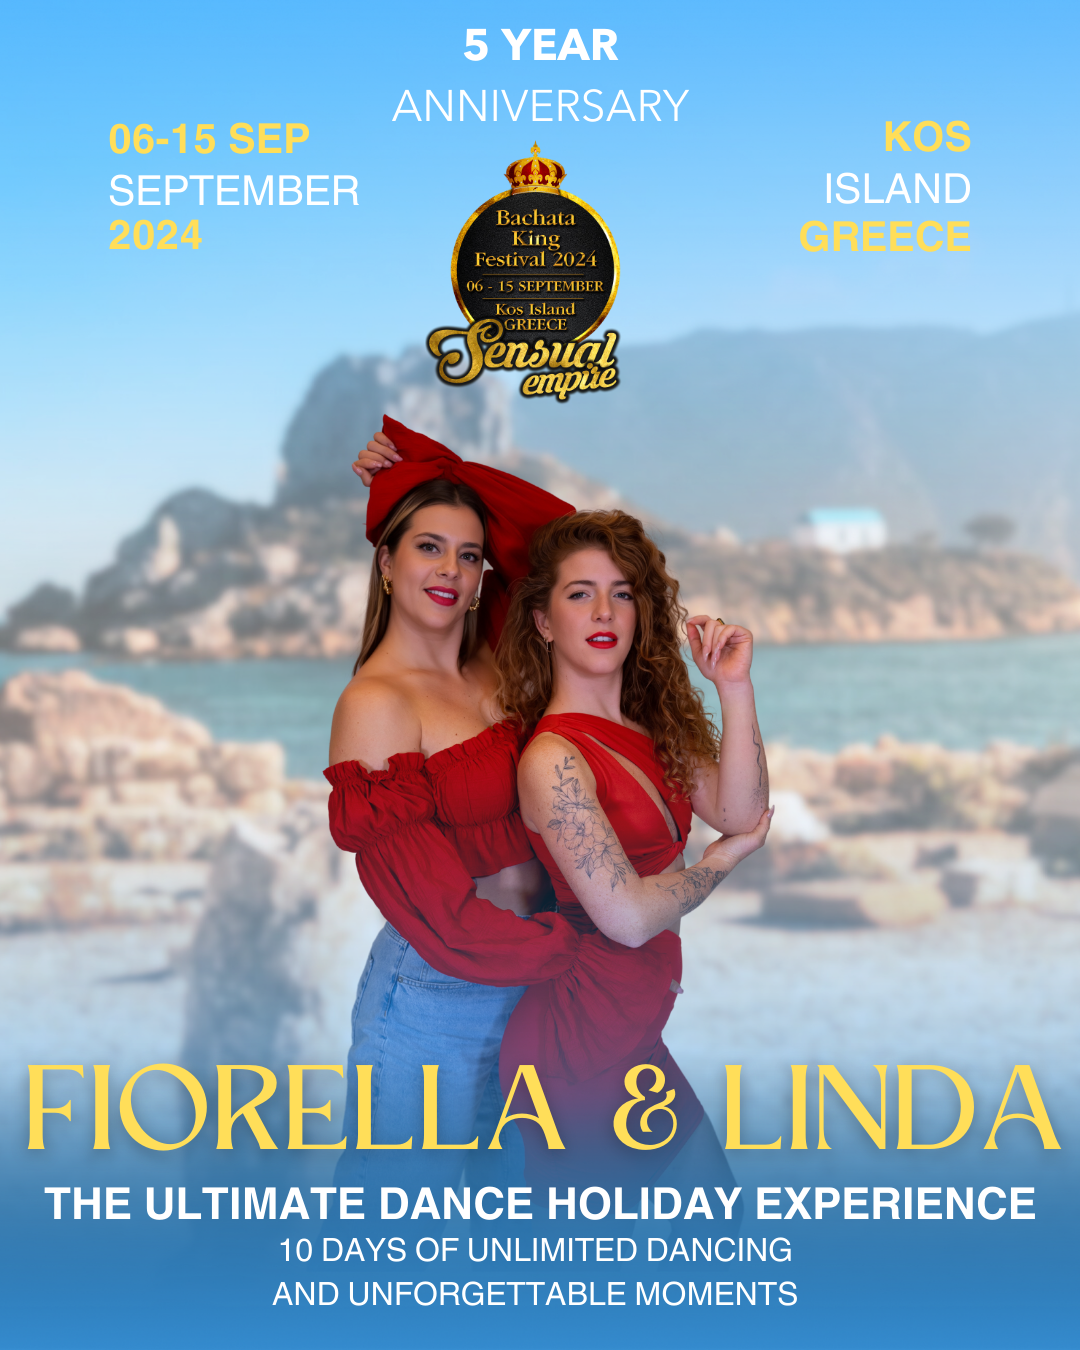 Fiorella & Linda